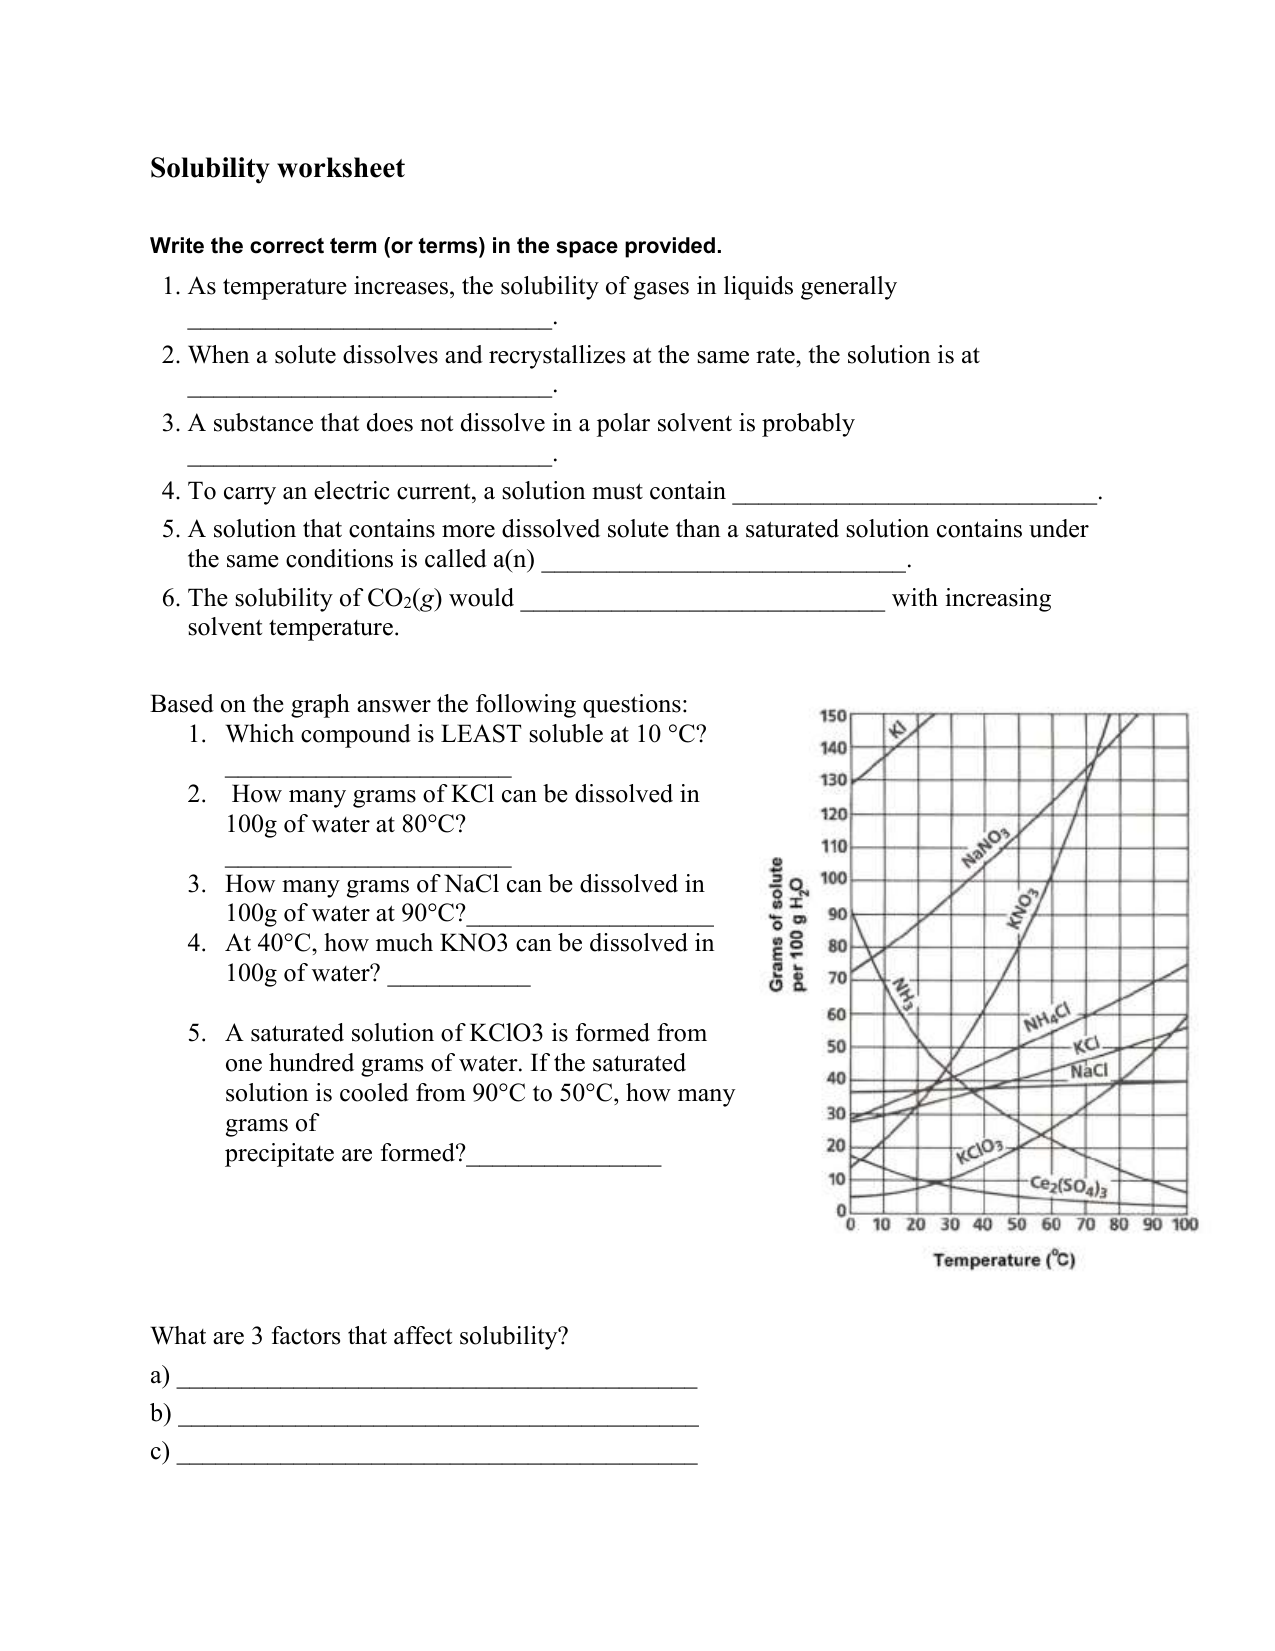 solubility-worksheet